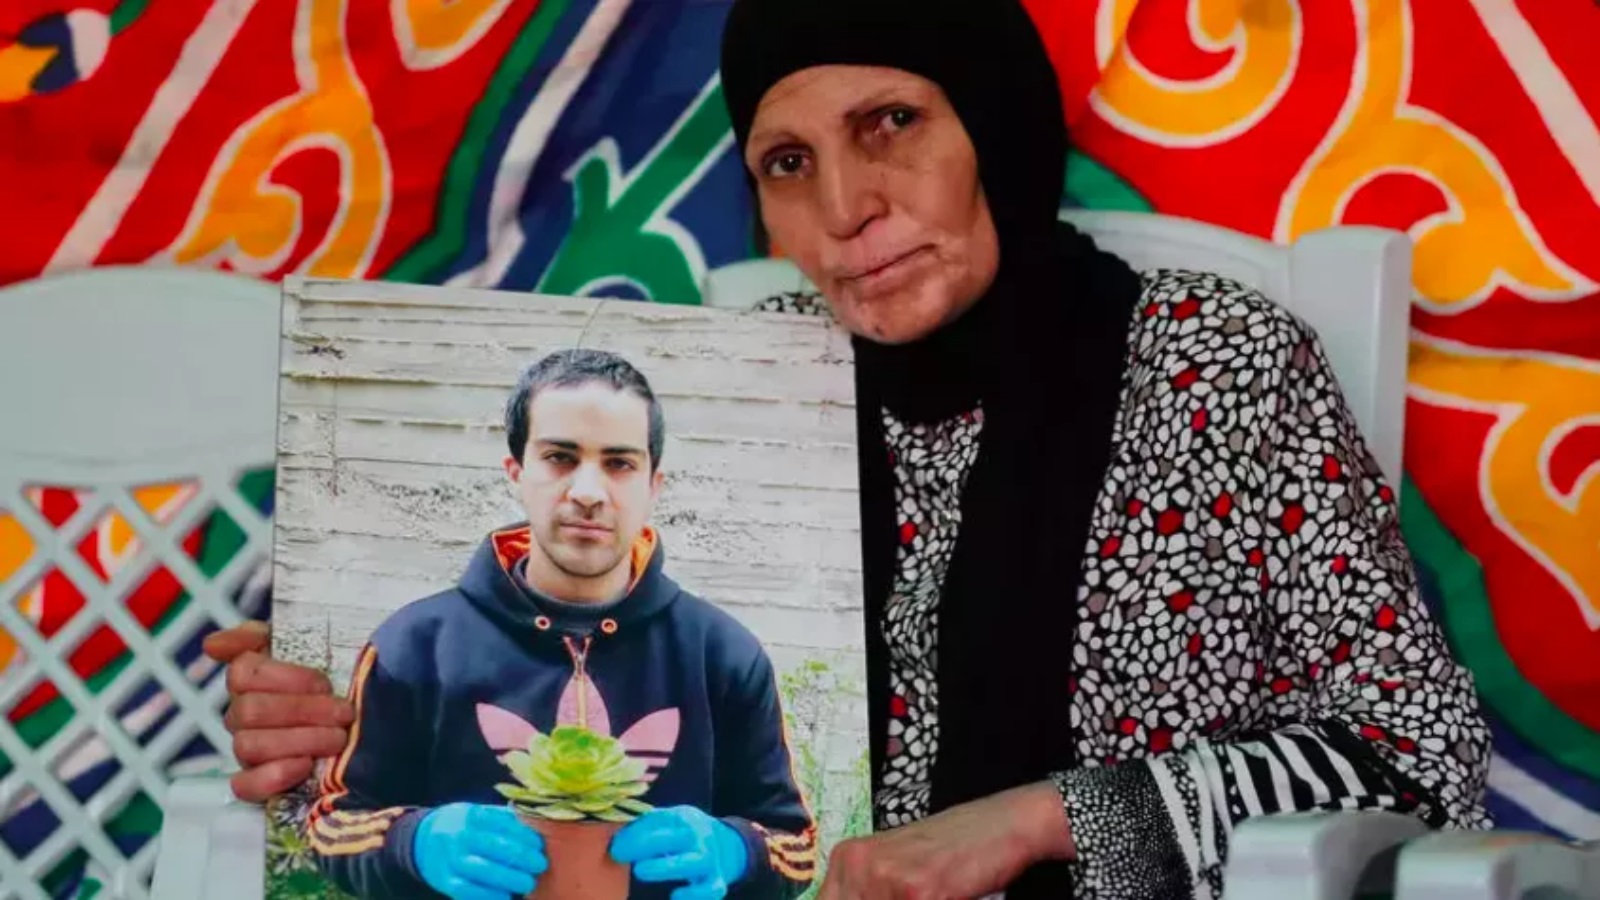 والدة إياد حلاق ، فلسطيني يبلغ من العمر 32 عامًا يعاني من التوحد ، قتلت الشرطة الإسرائيلية برصاصة عندما اعتقدت خطأً أنه مسلح بمسدس